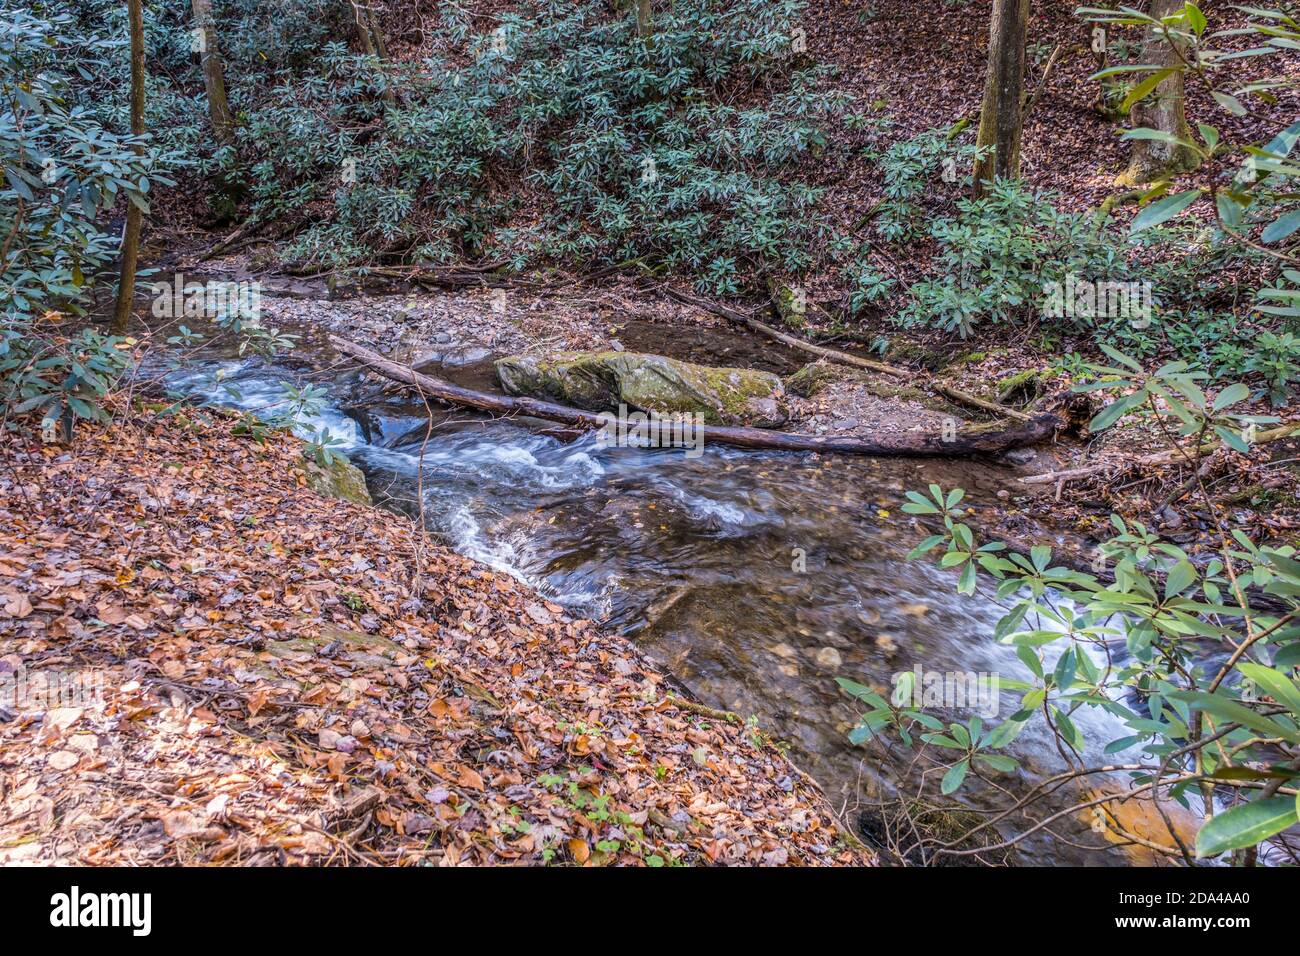 Un rapido ruscello che scorre attraverso i boschi intorno a massi e tronchi circondati da foglie cadute con rododendri nel sfondo su una caduta Foto Stock